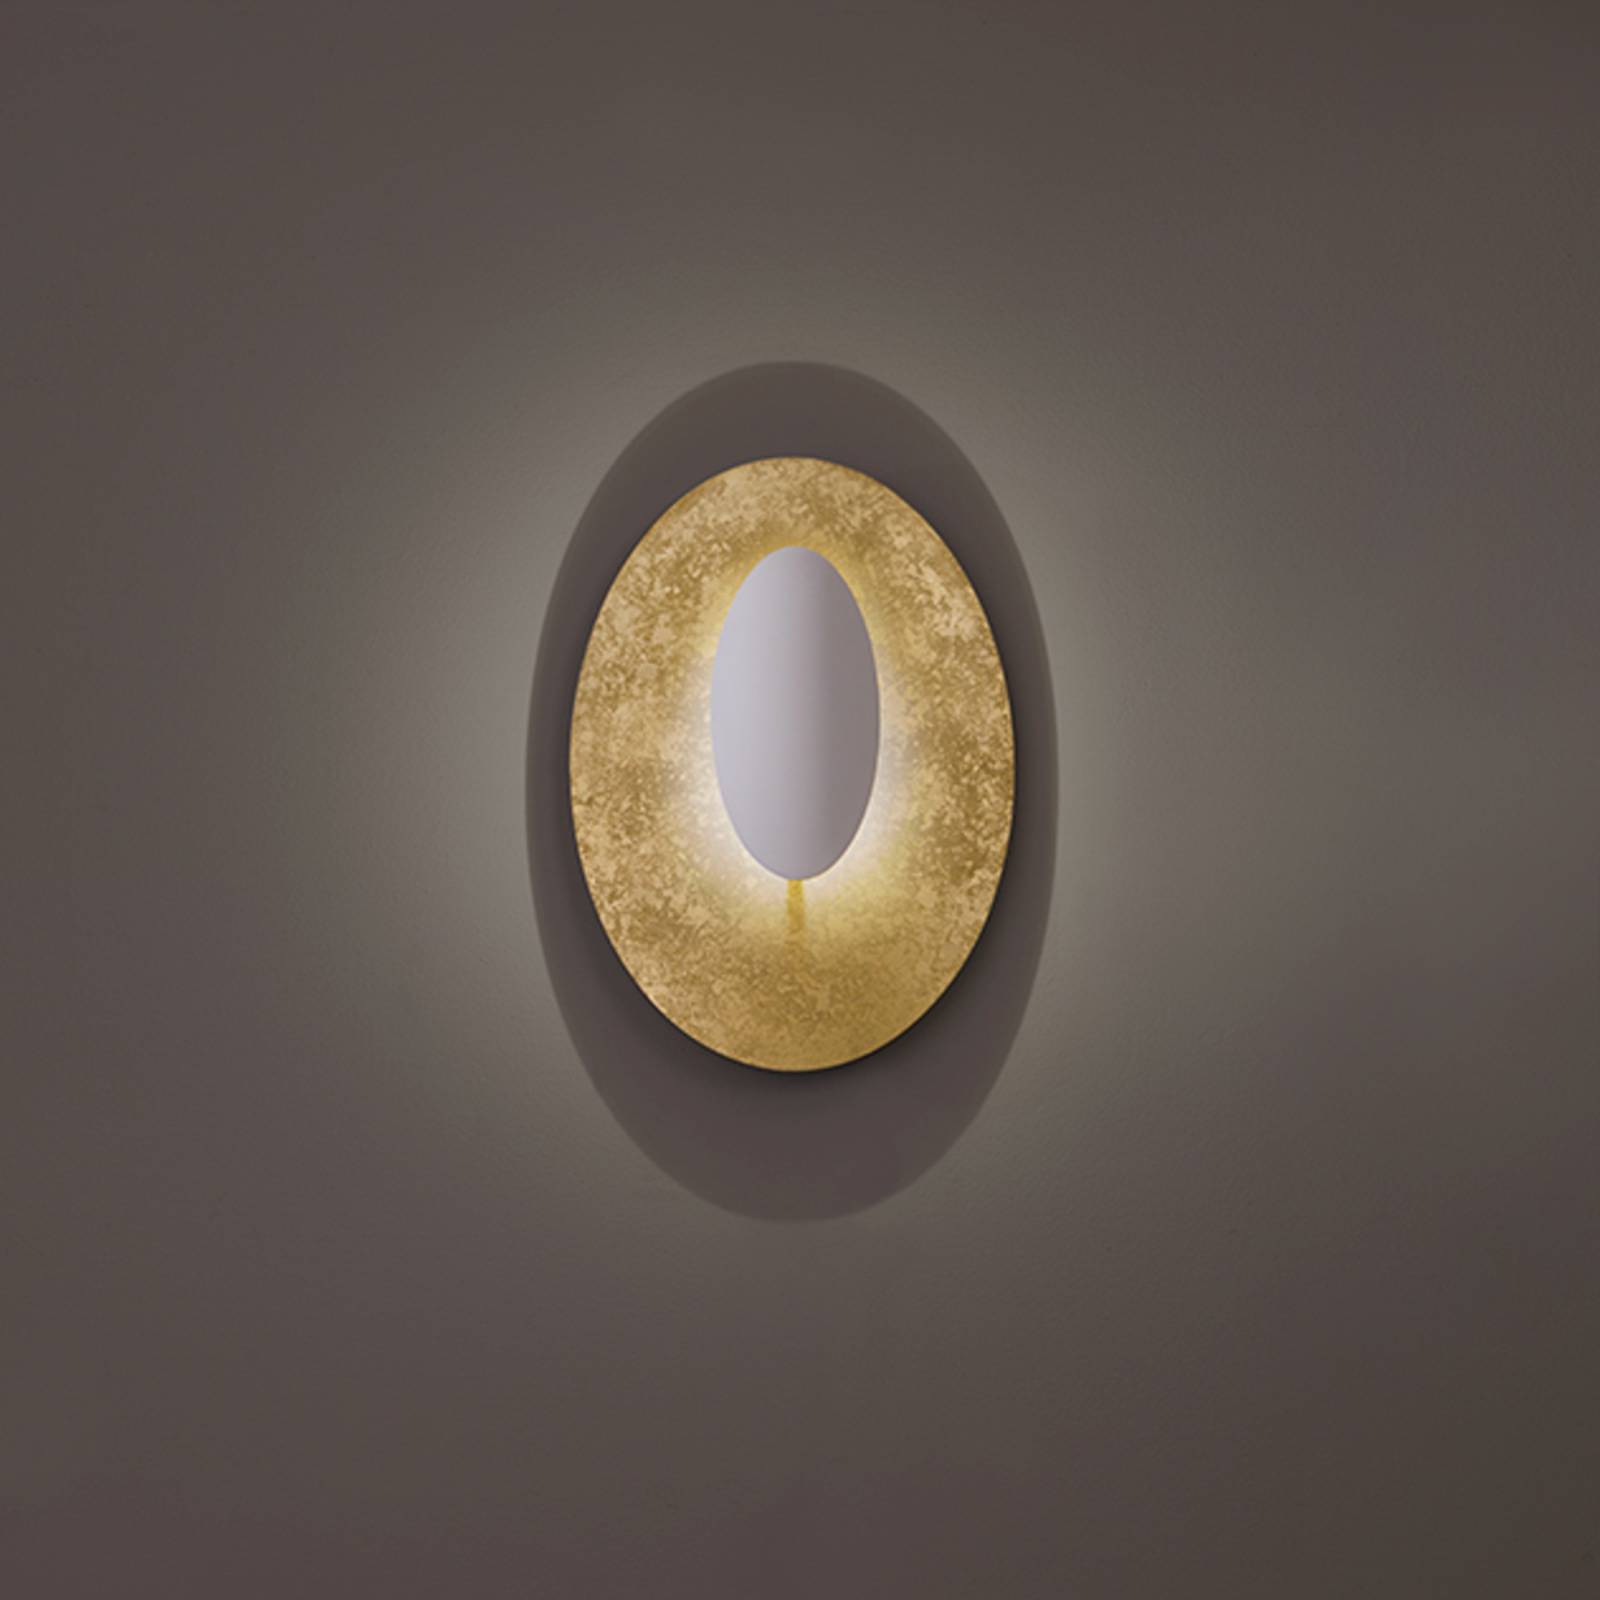 Icone masai mennyezeti 1-fényes 927 70x44cm arany/fehér